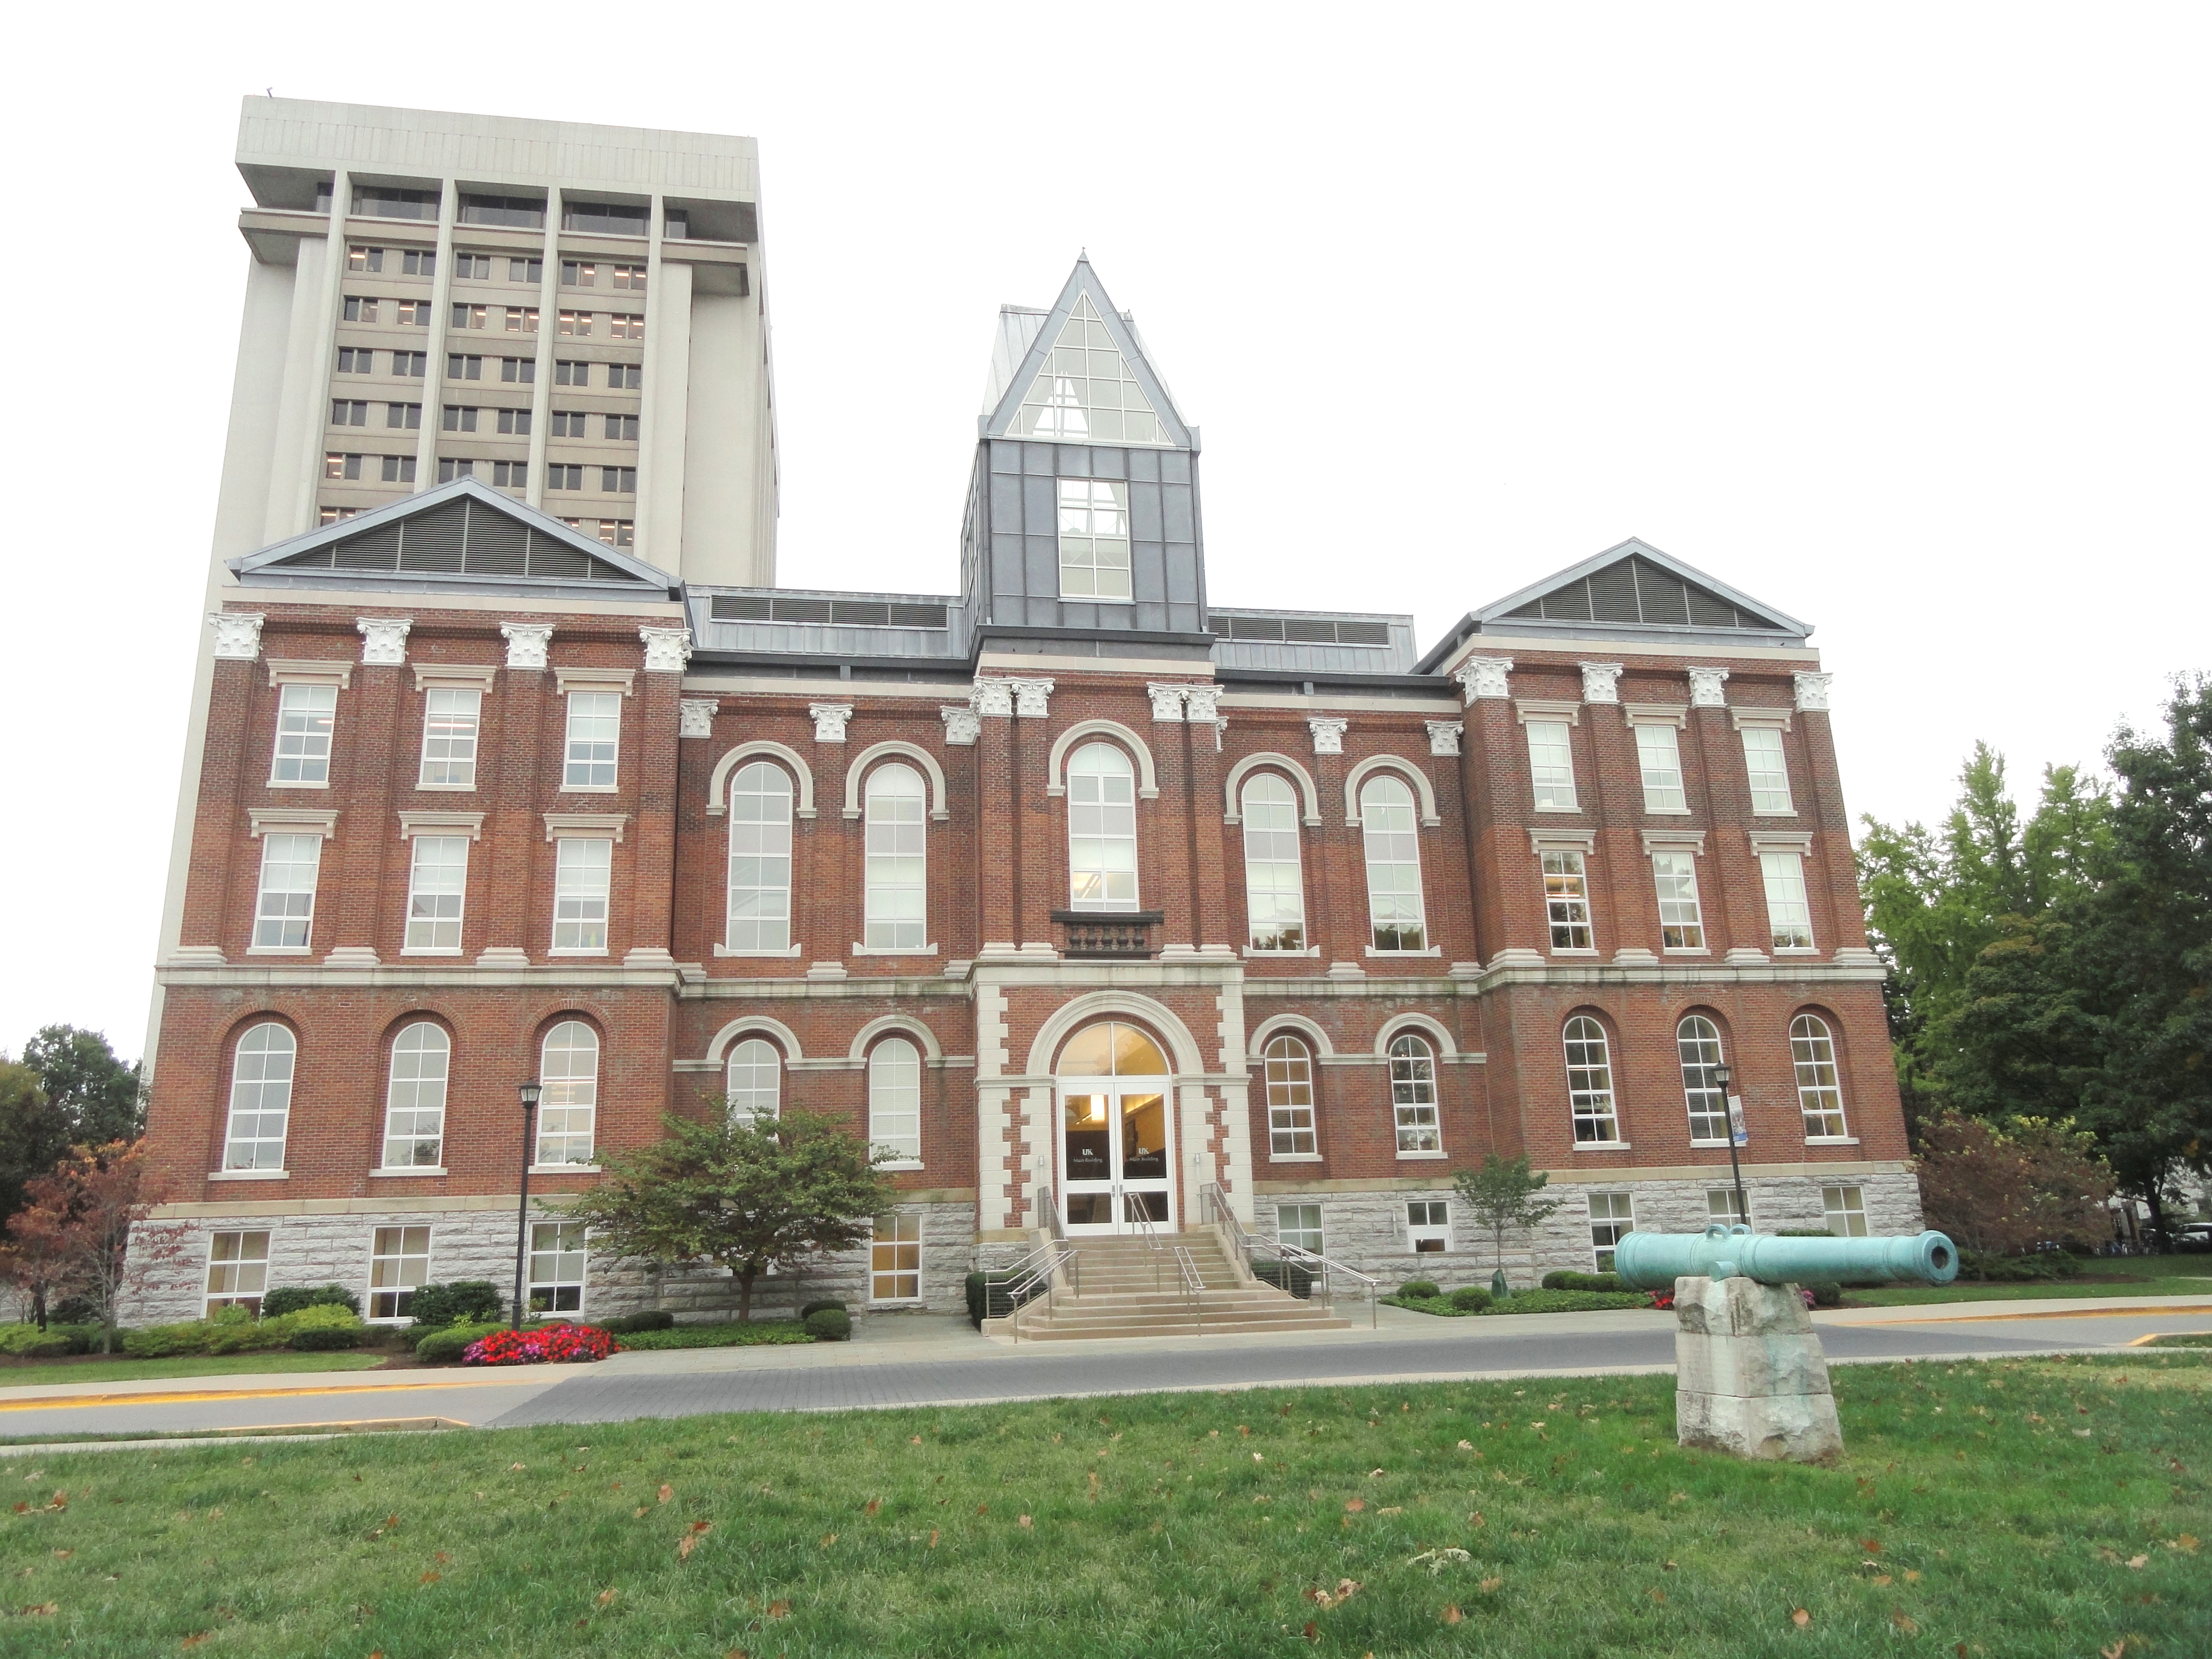 File:Main Building - University of Kentucky - DSC09119.JPG - Wikimedia ...